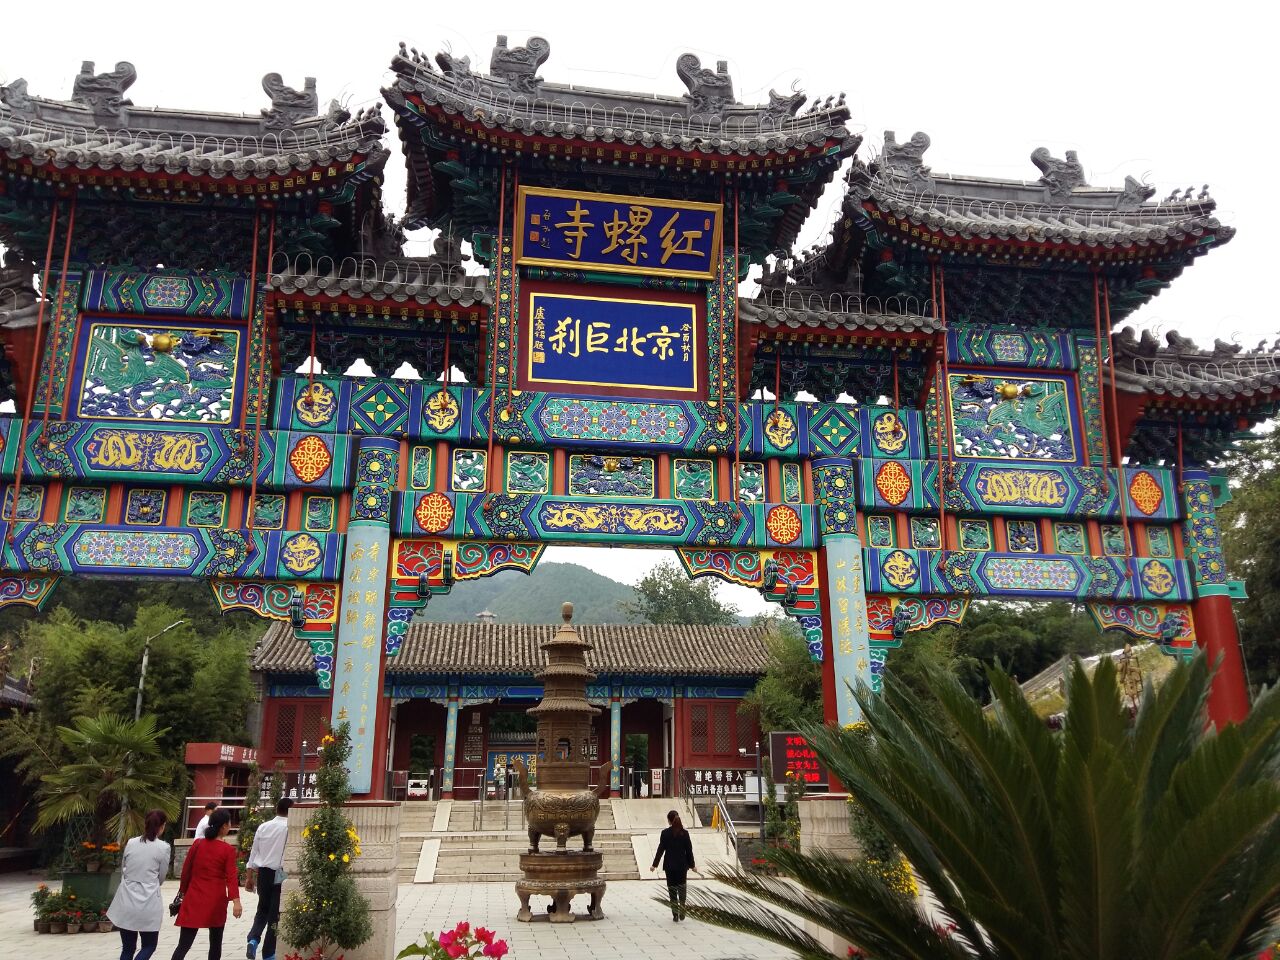 【携程攻略】怀柔区红螺寺景点,红螺寺景区位于北京市怀柔区城北5公里